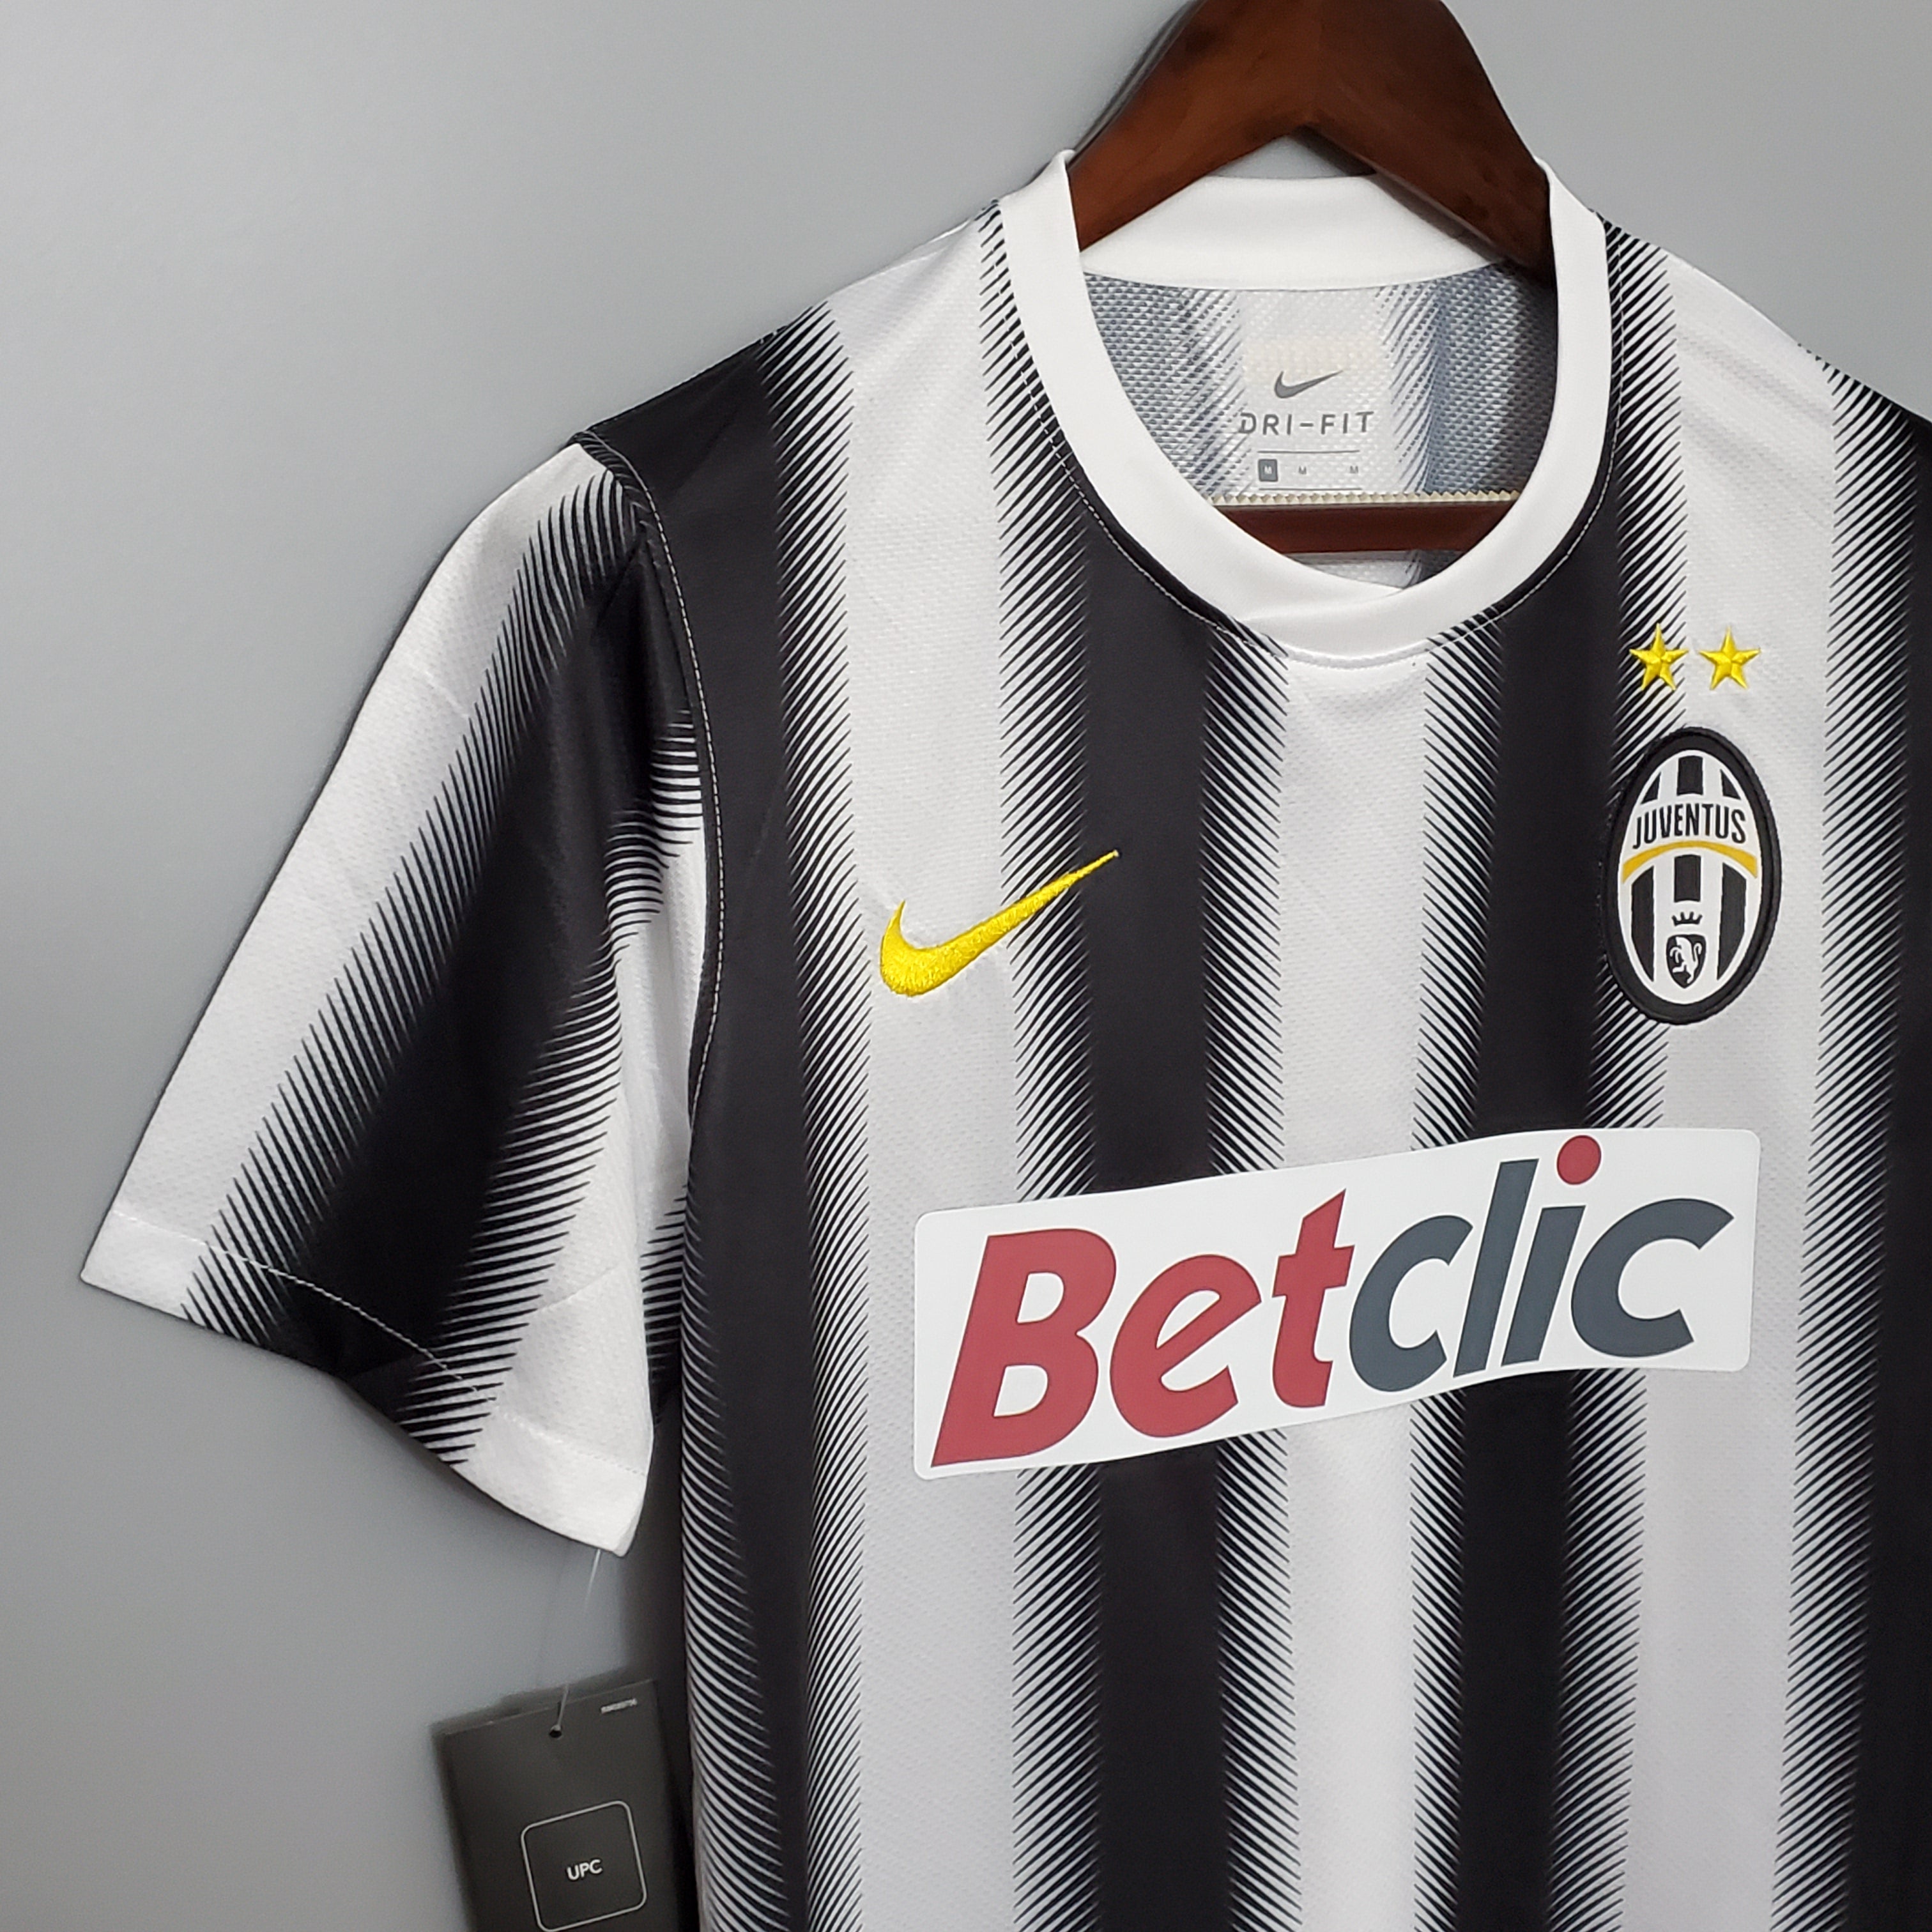 Juventus 2011-12 Home Jersey